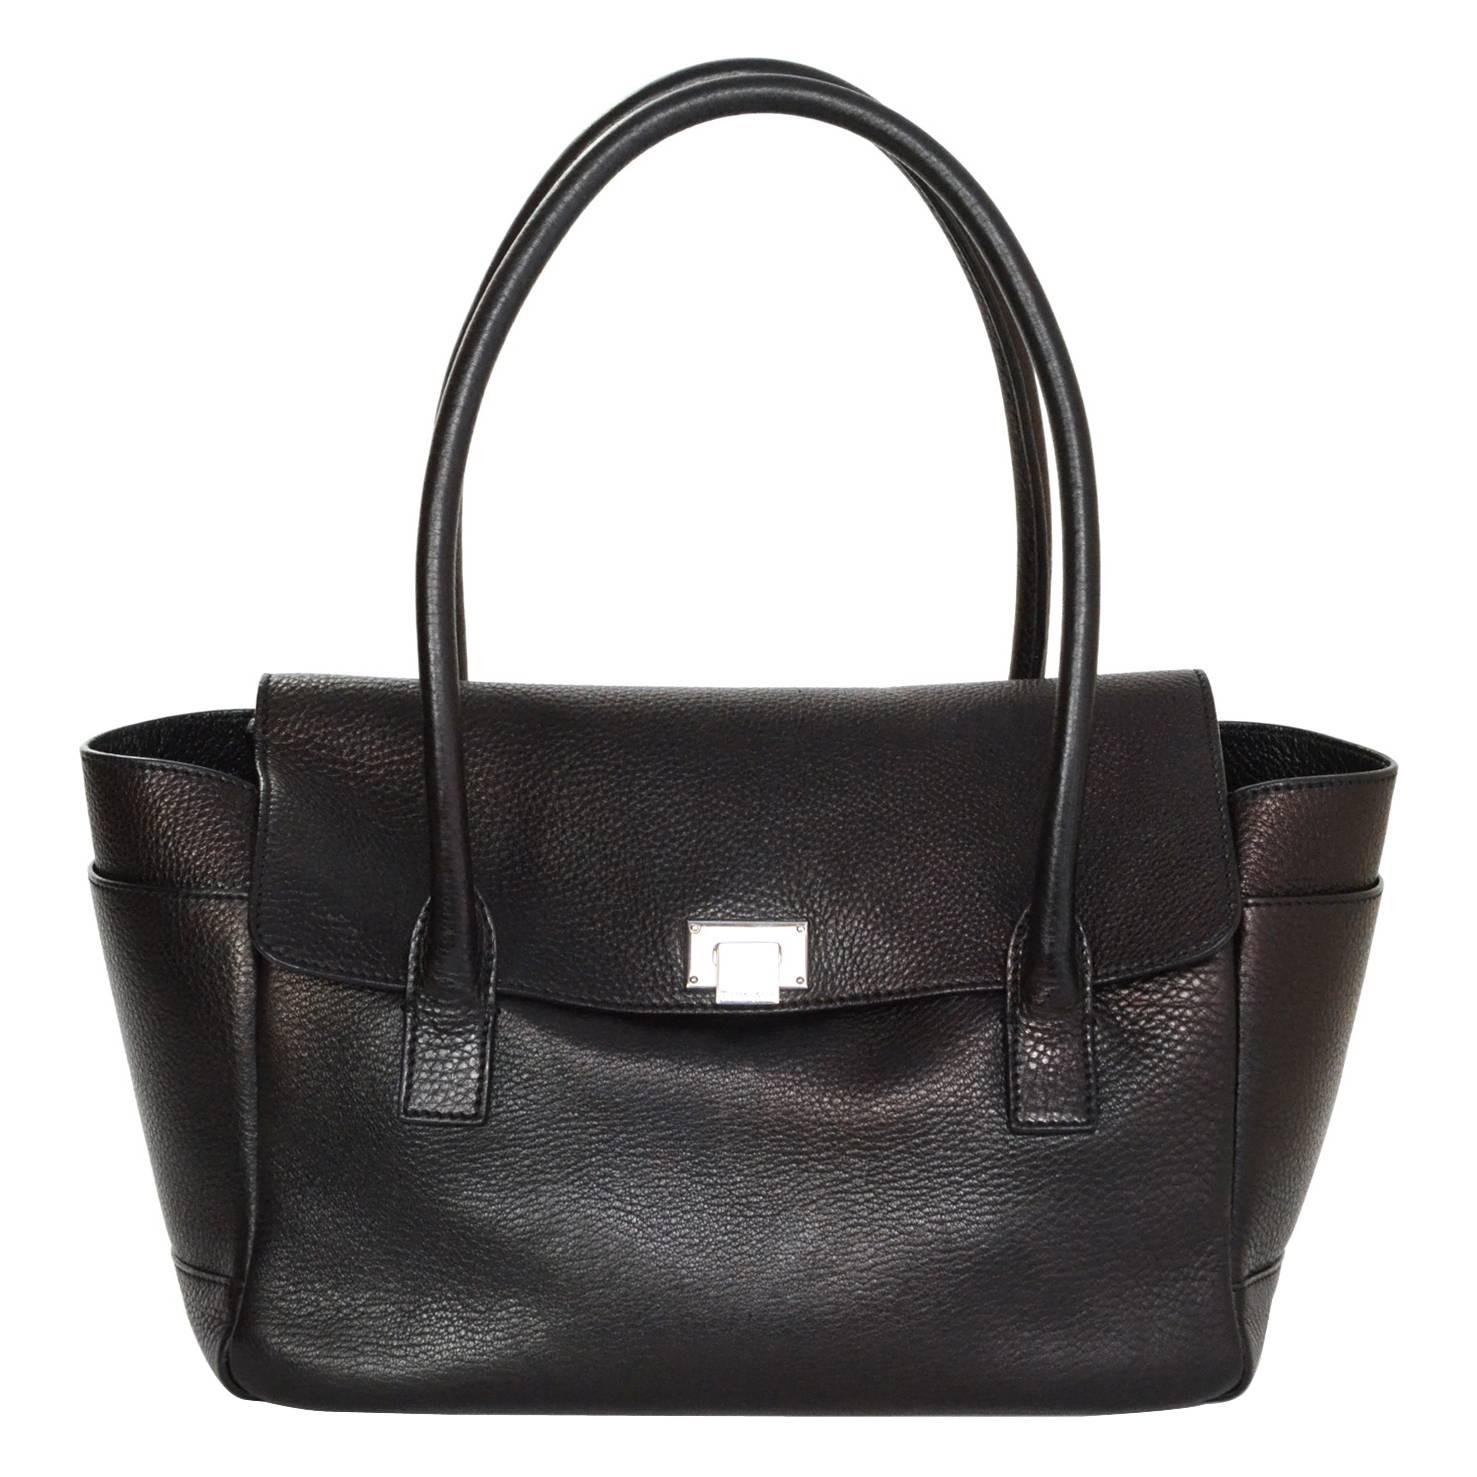 Tiffany & Co. Black Leather Shoulder Bag